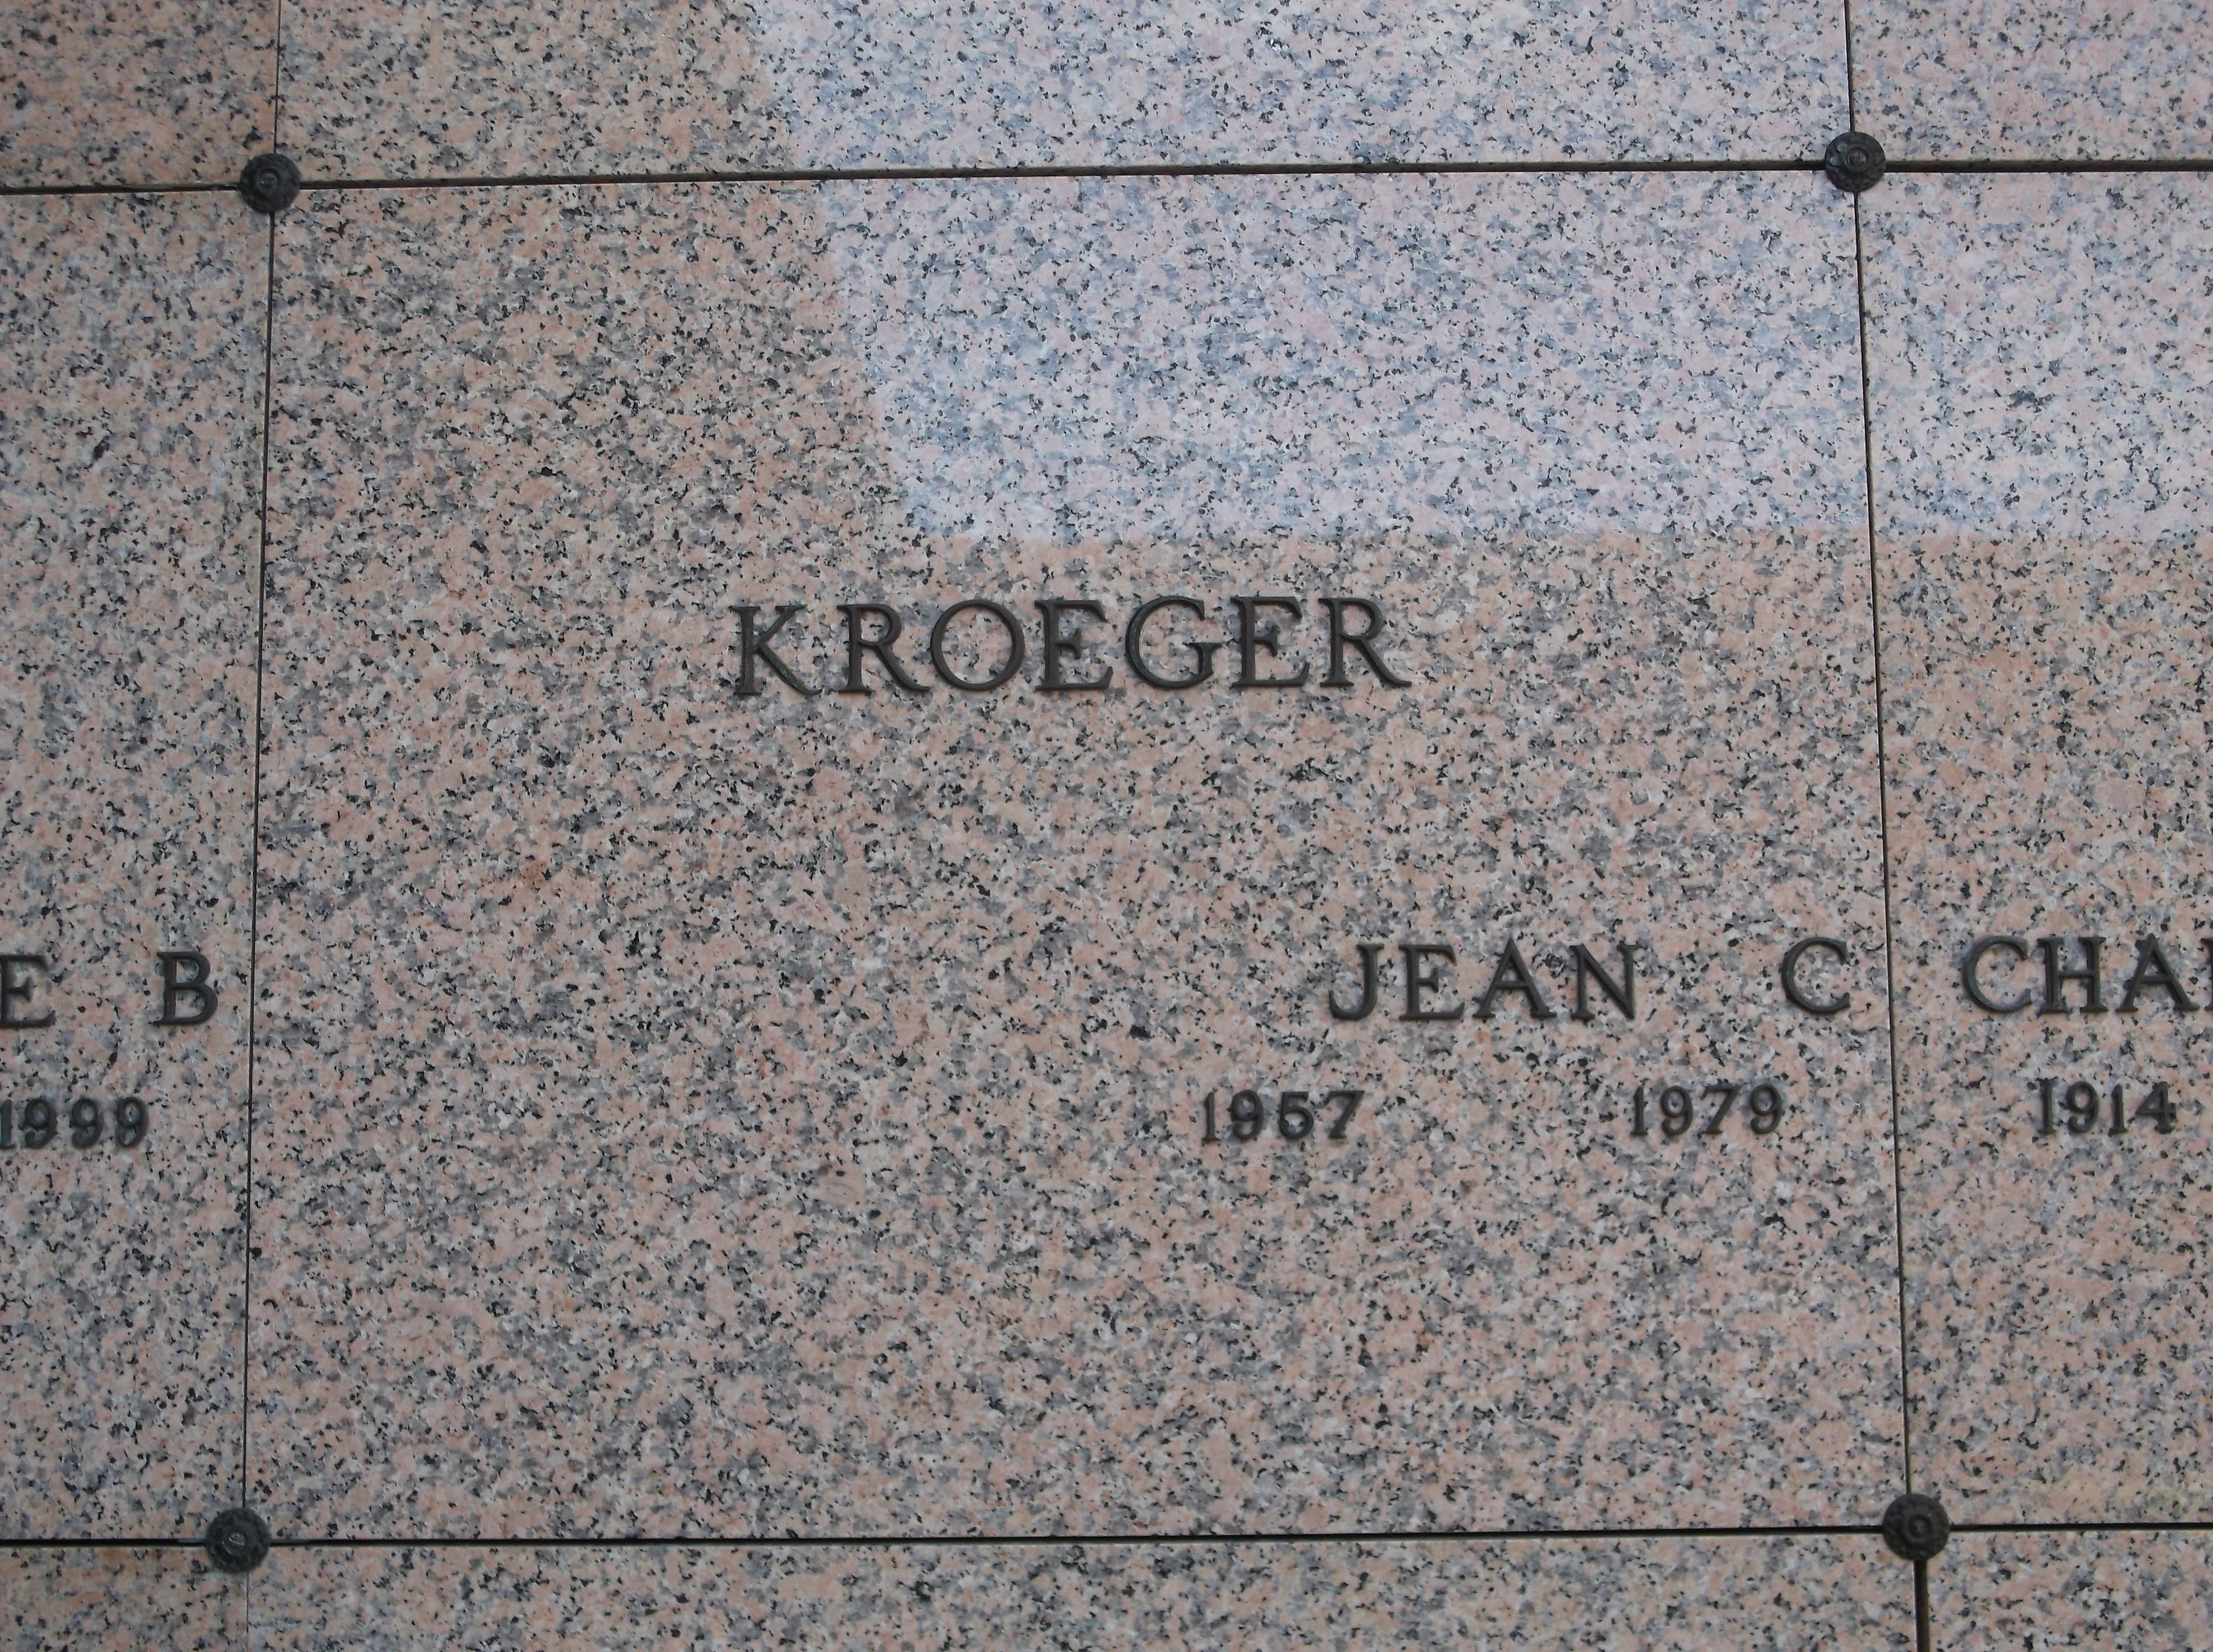 Jean C Kroeger